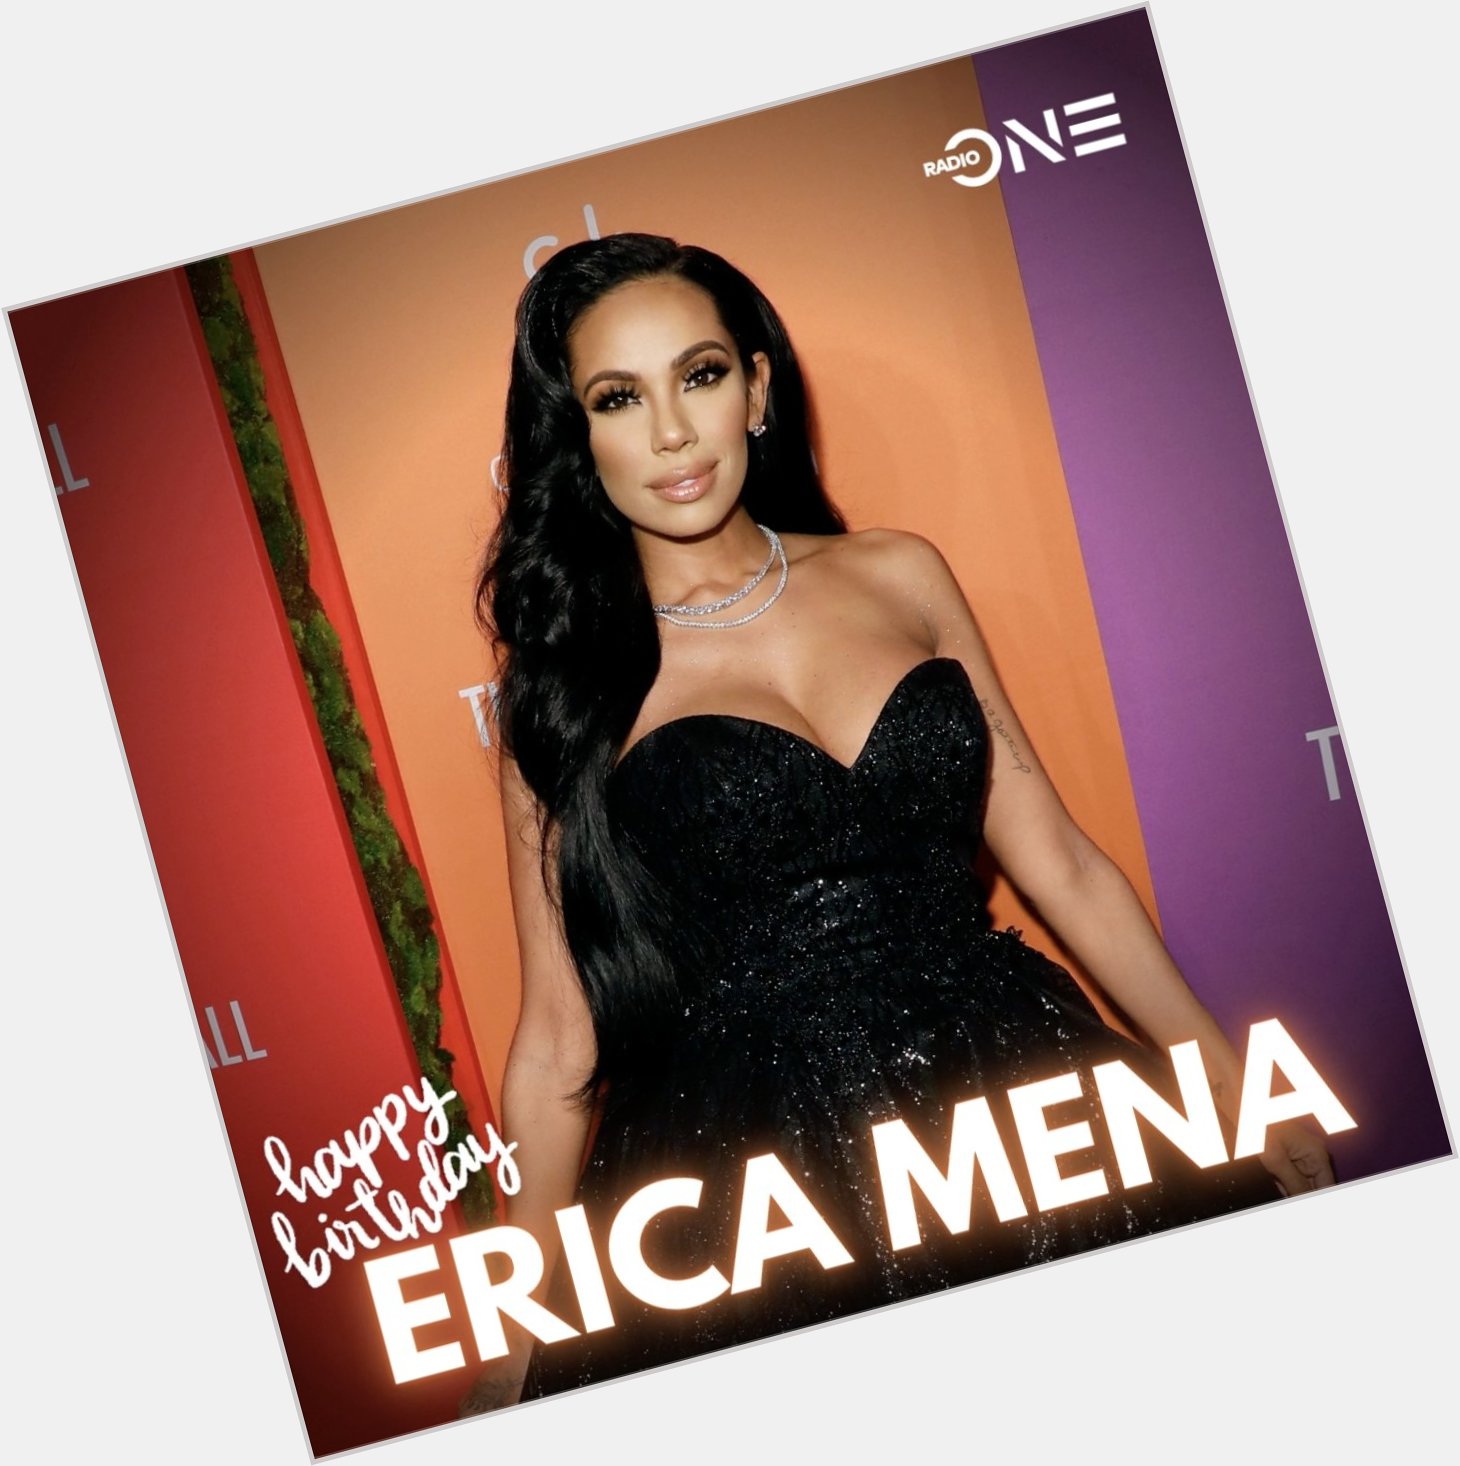 Happy 33rd birthday to Erica Mena 